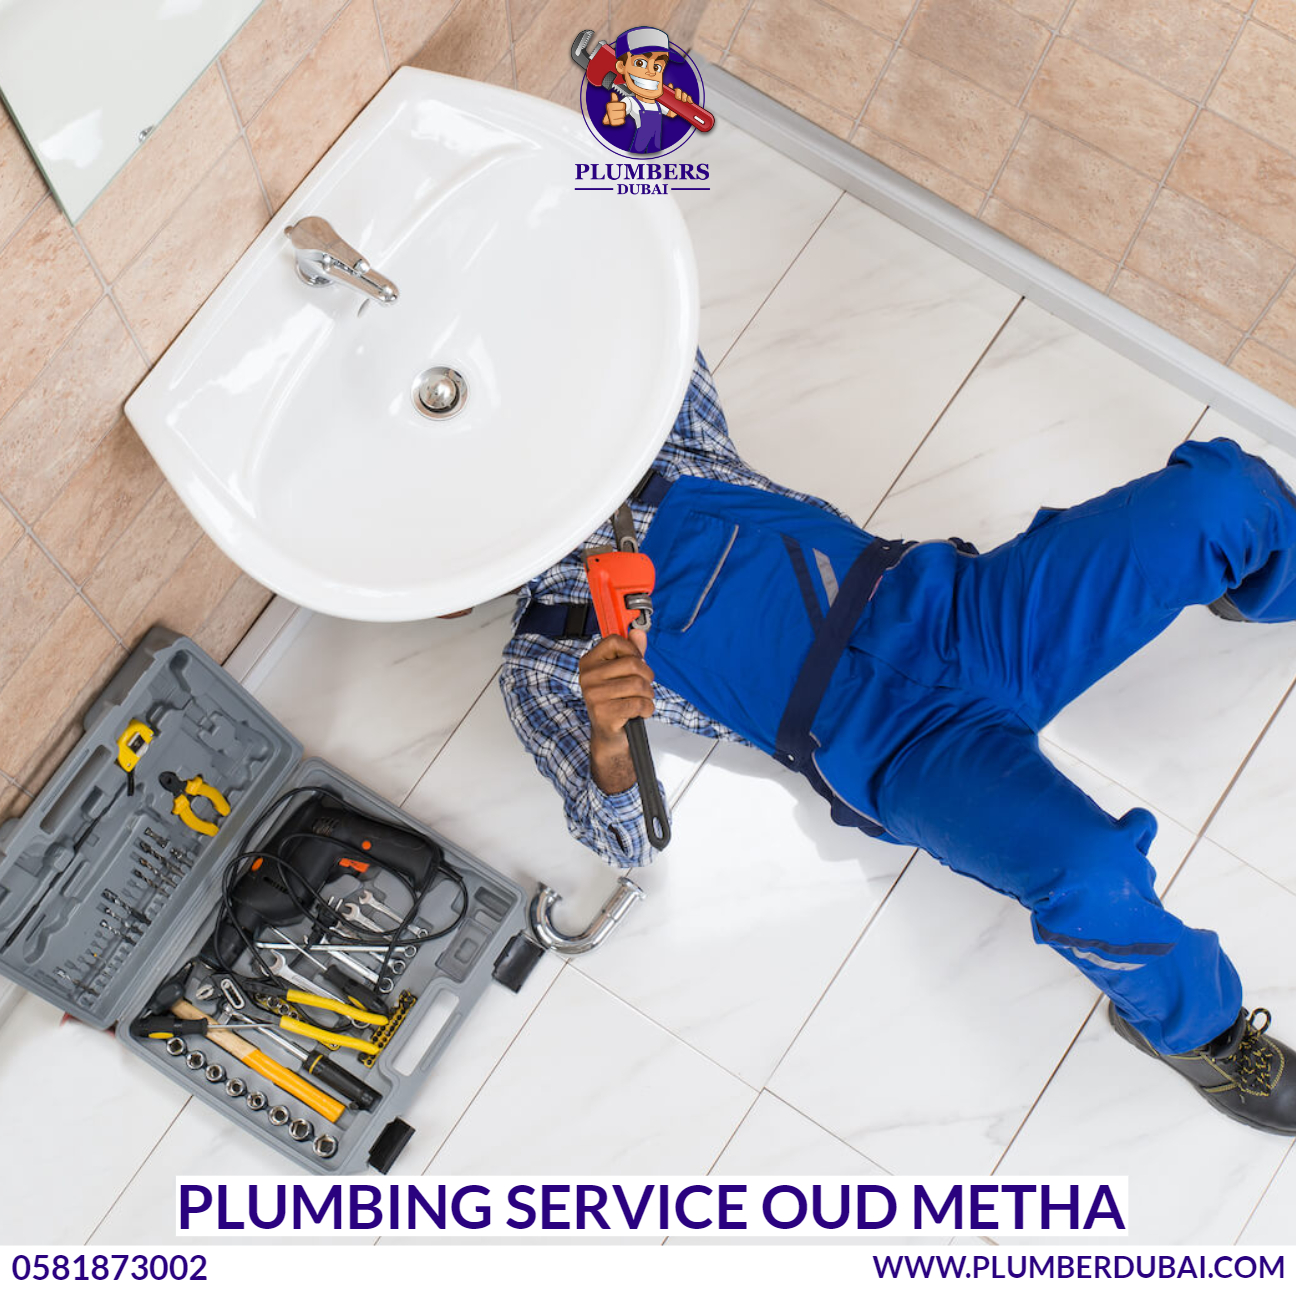 Plumbing Service Oud Metha